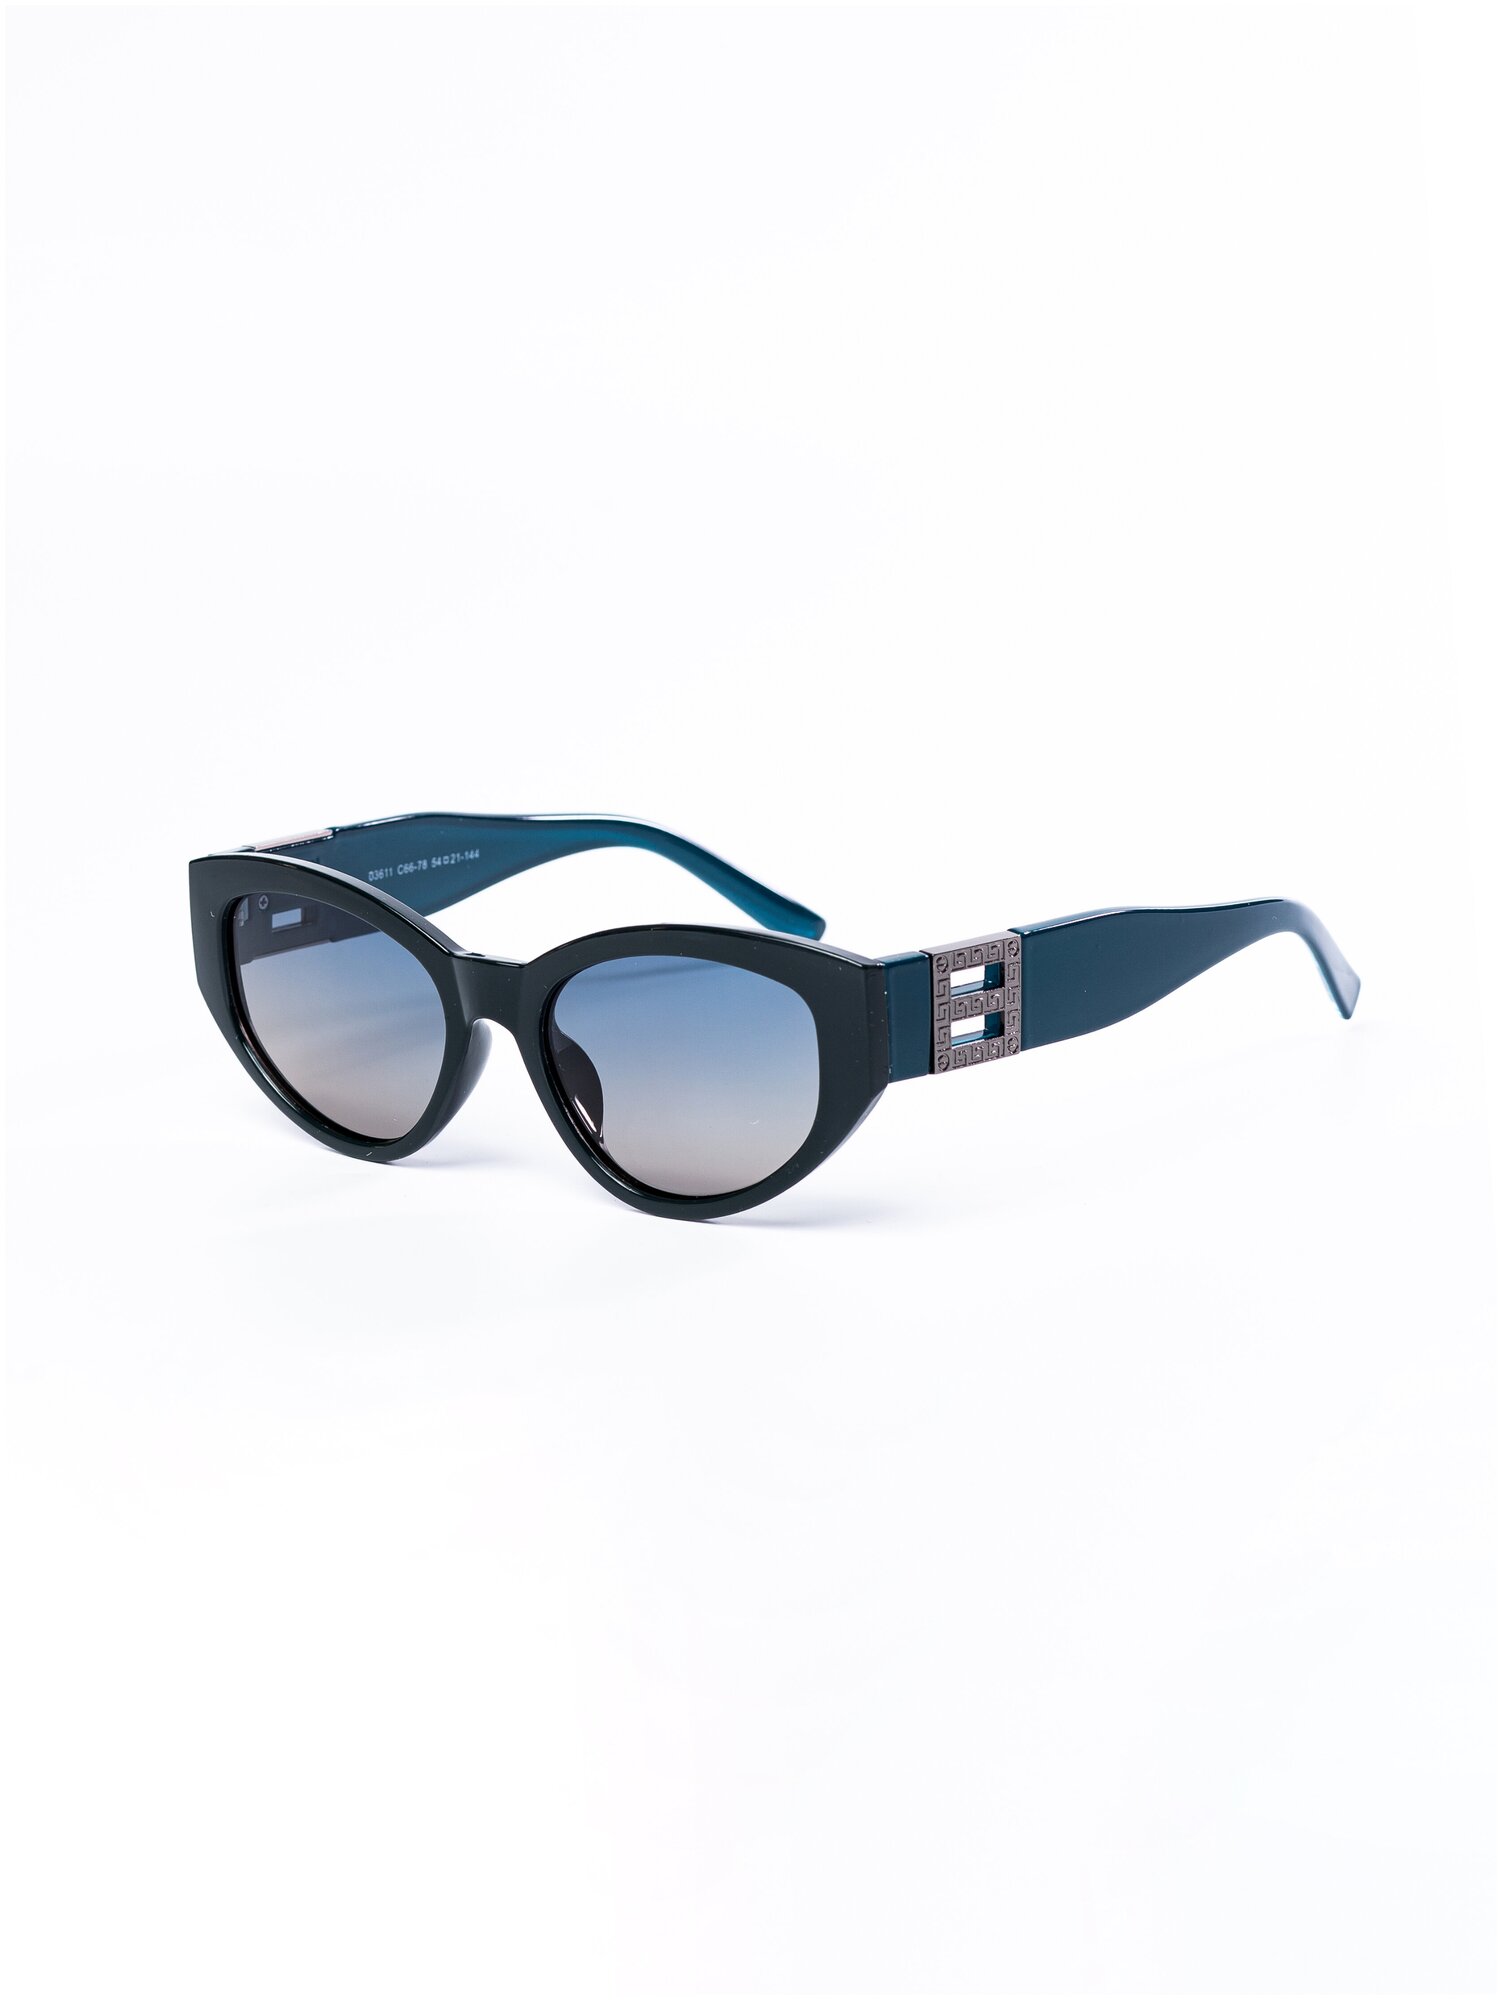 Солнцезащитные очки женские / Оправа «кошачий глаз» / Стильные очки / Ультрафиолетовый фильтр / Защита UV400 / Чехол в подарок / Темные очки 200422543